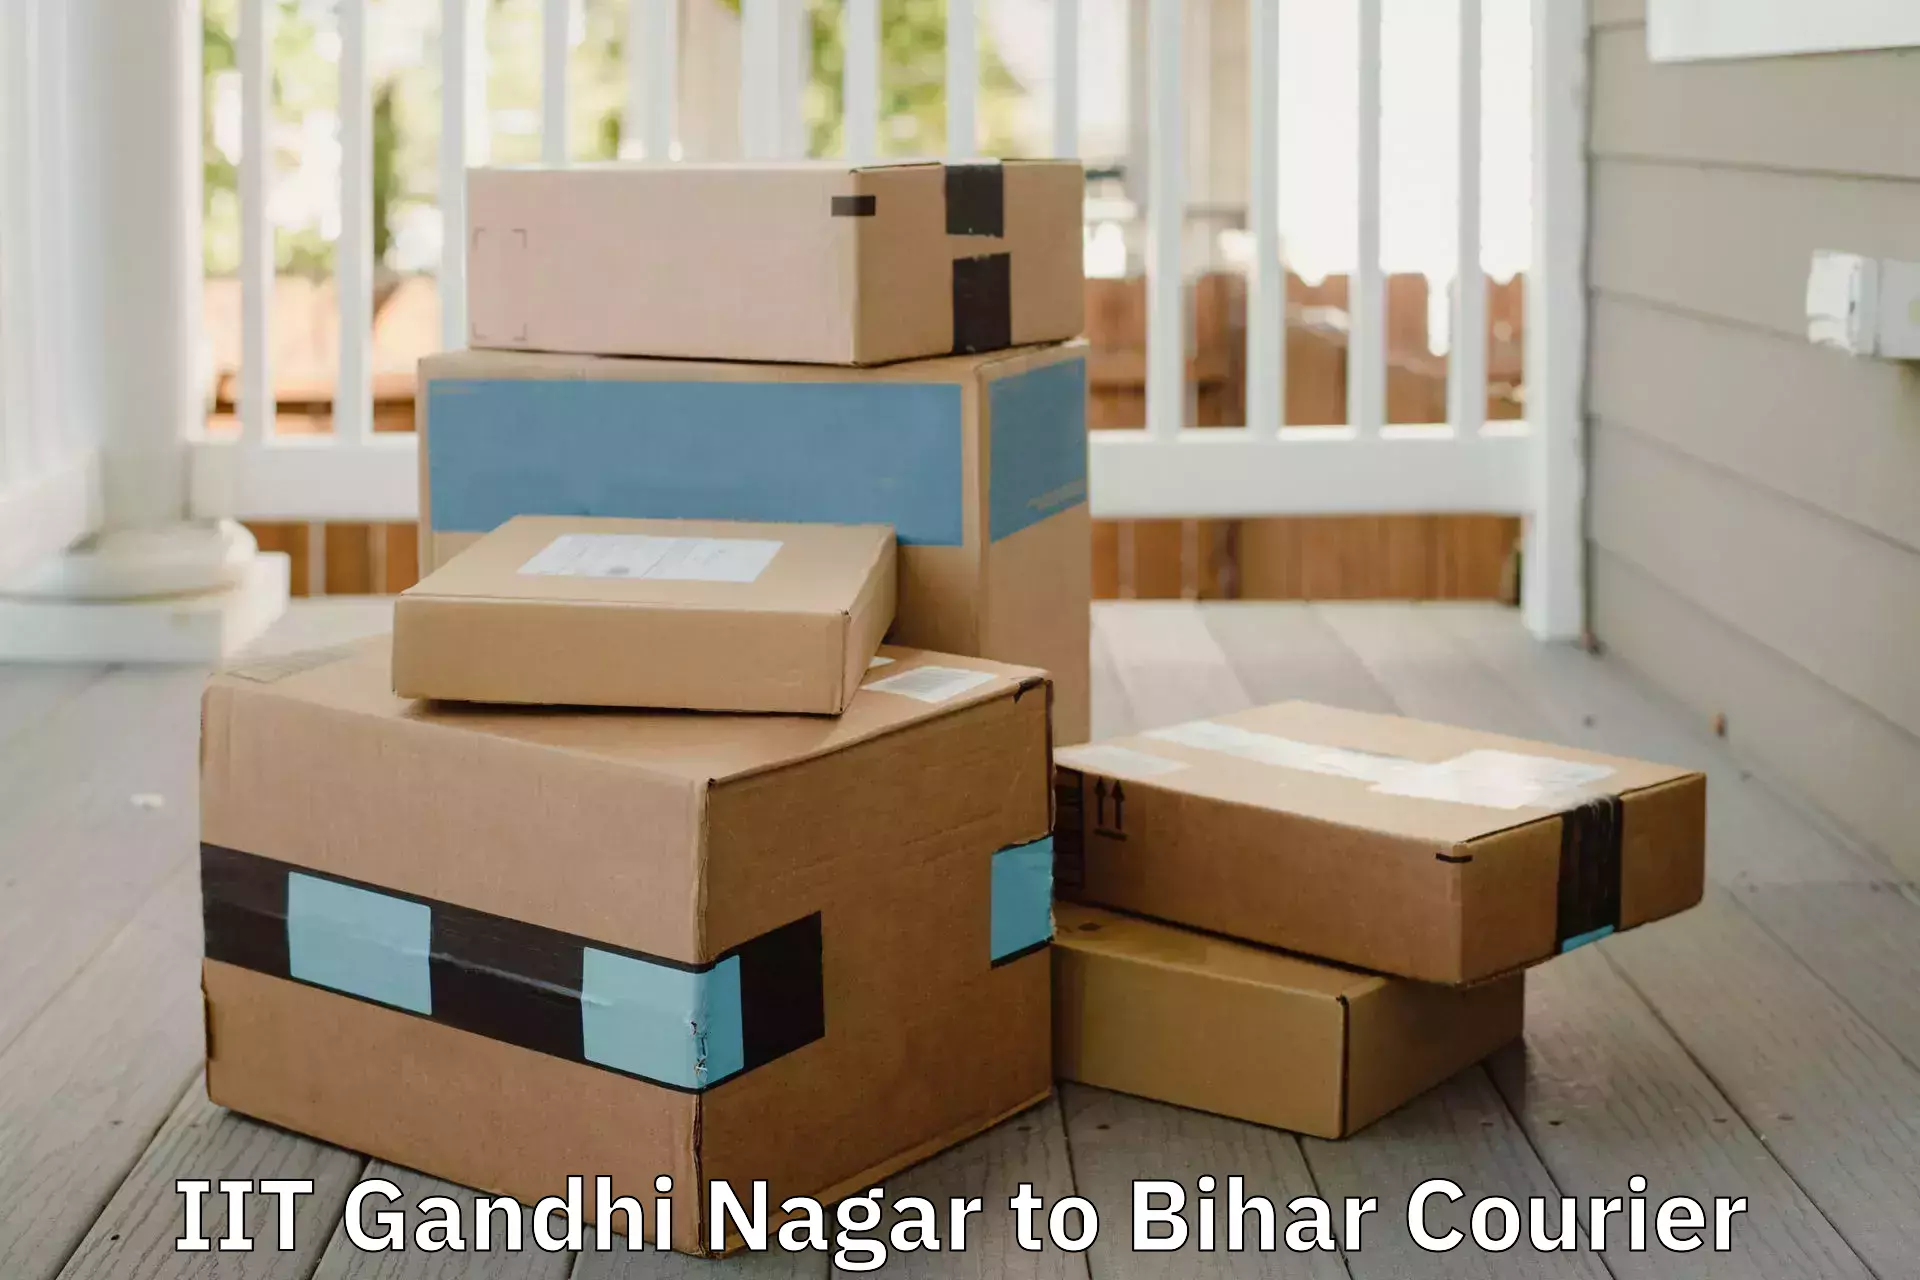 Trusted furniture movers IIT Gandhi Nagar to Jaynagar